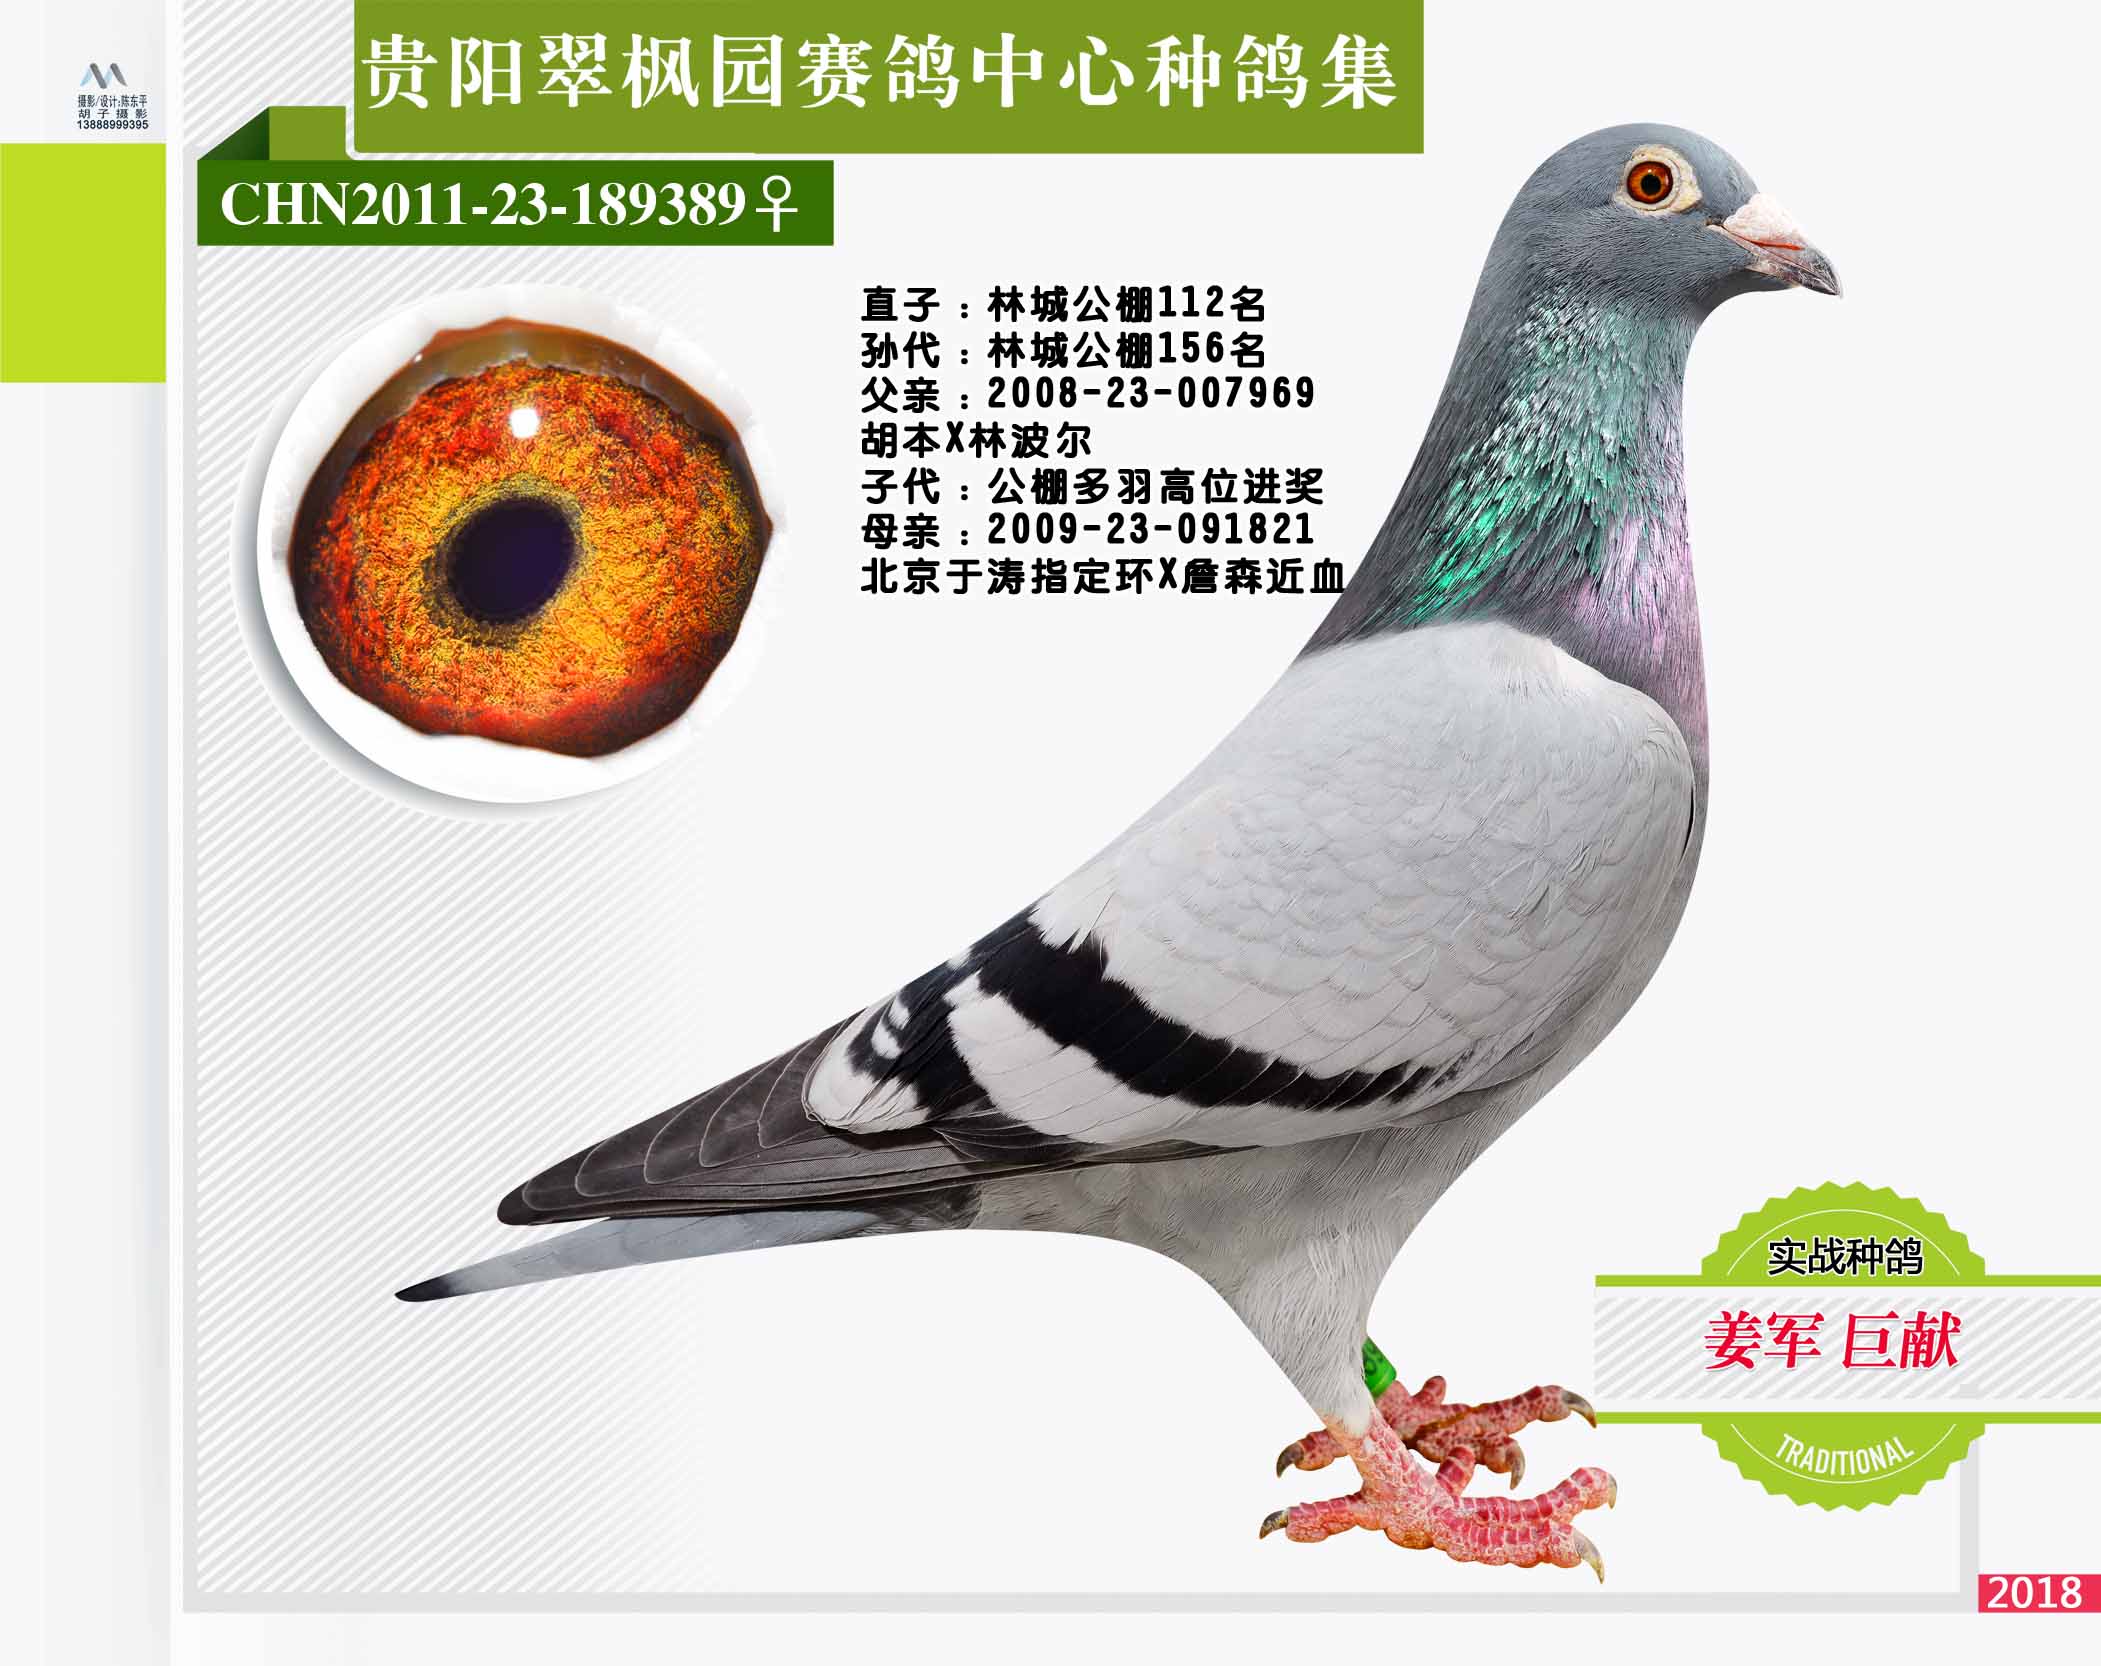 翠枫园赛鸽中心种鸽拍卖专集照片欣赏